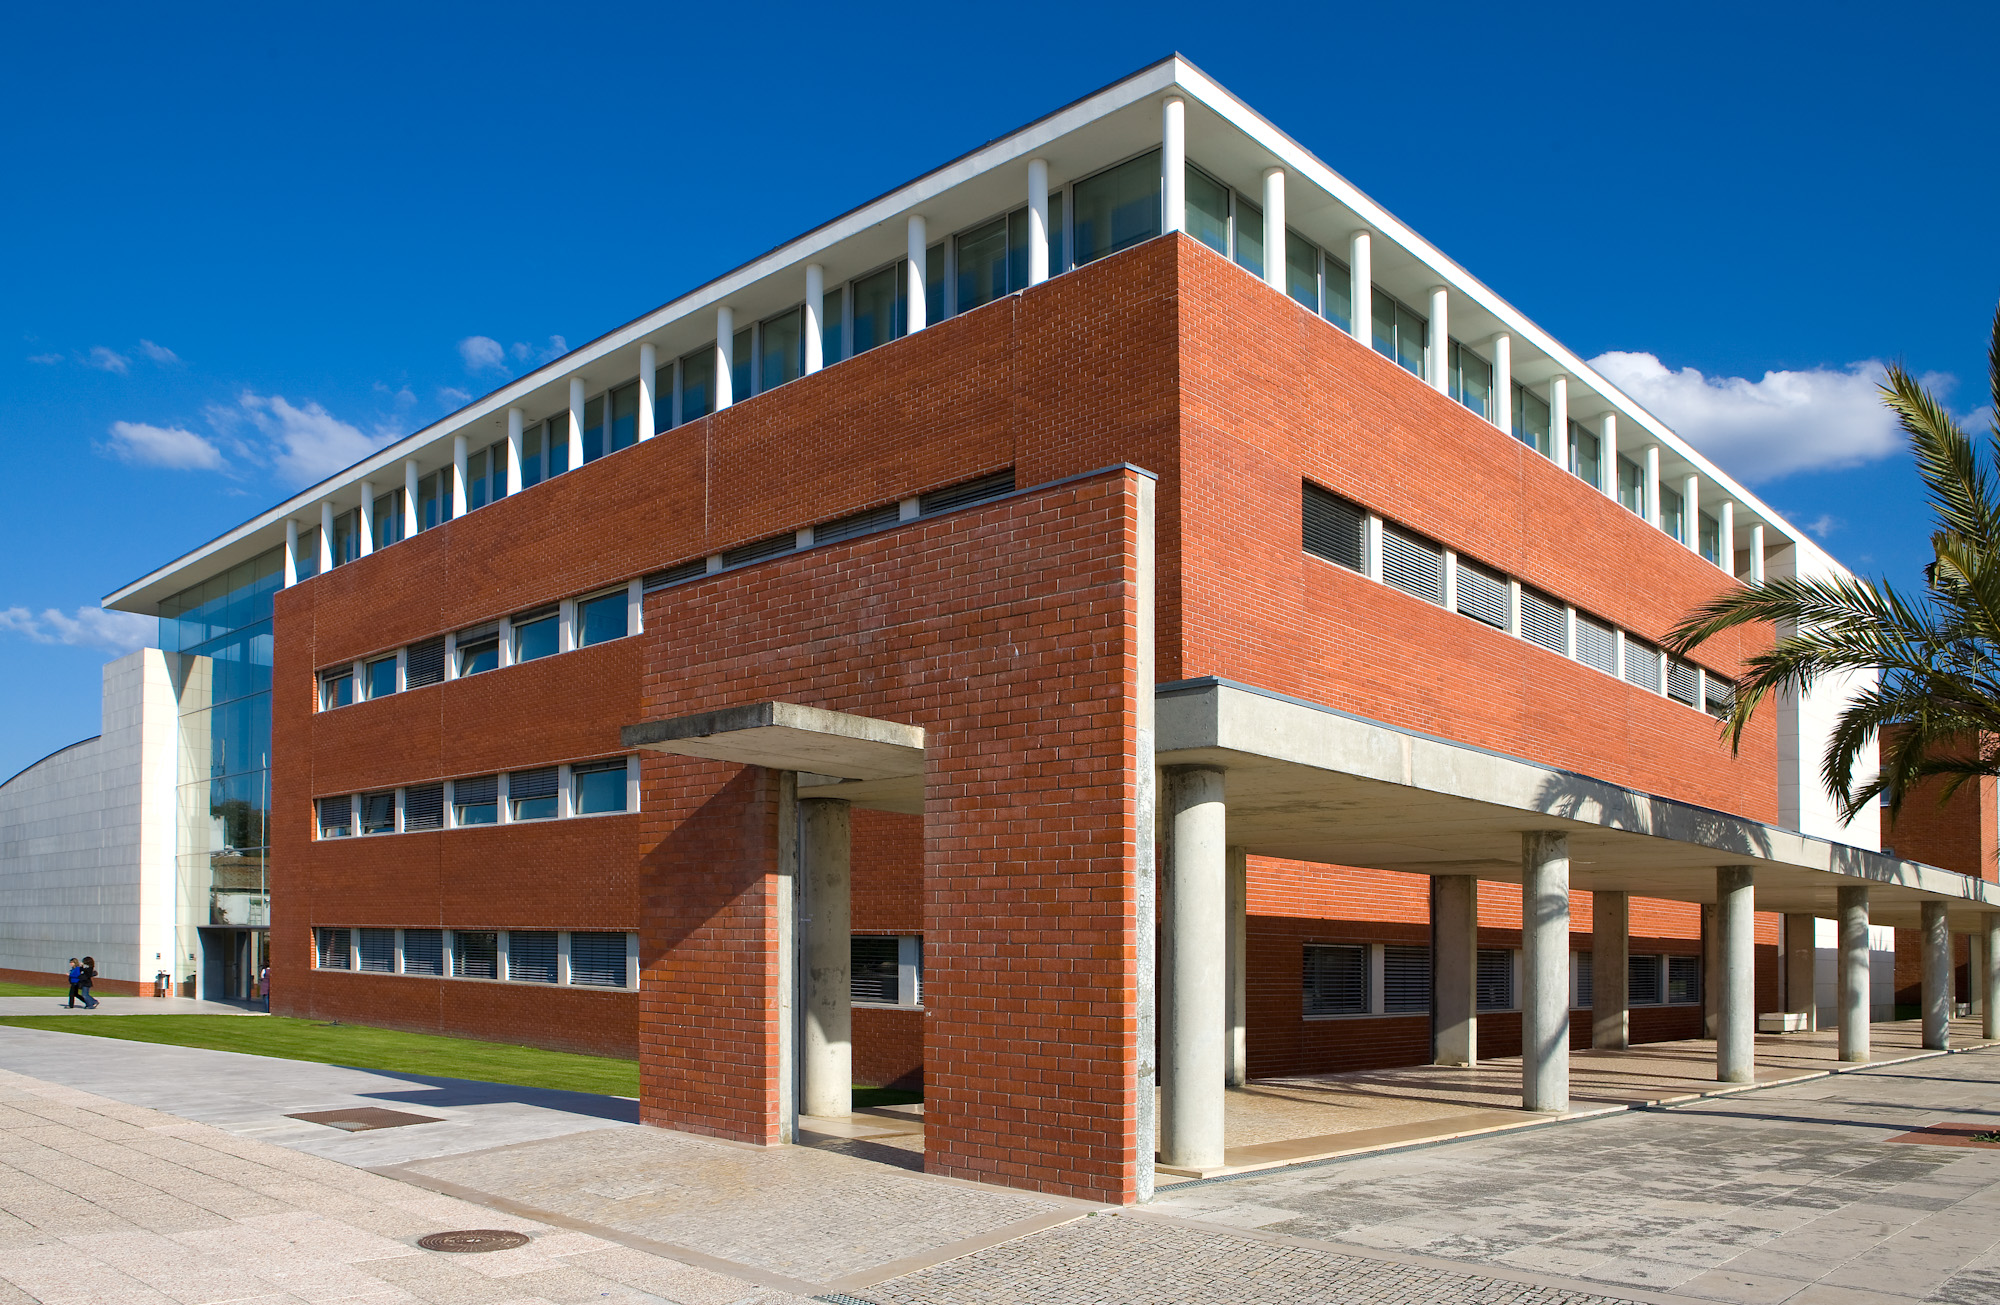 Universidade de Aveiro